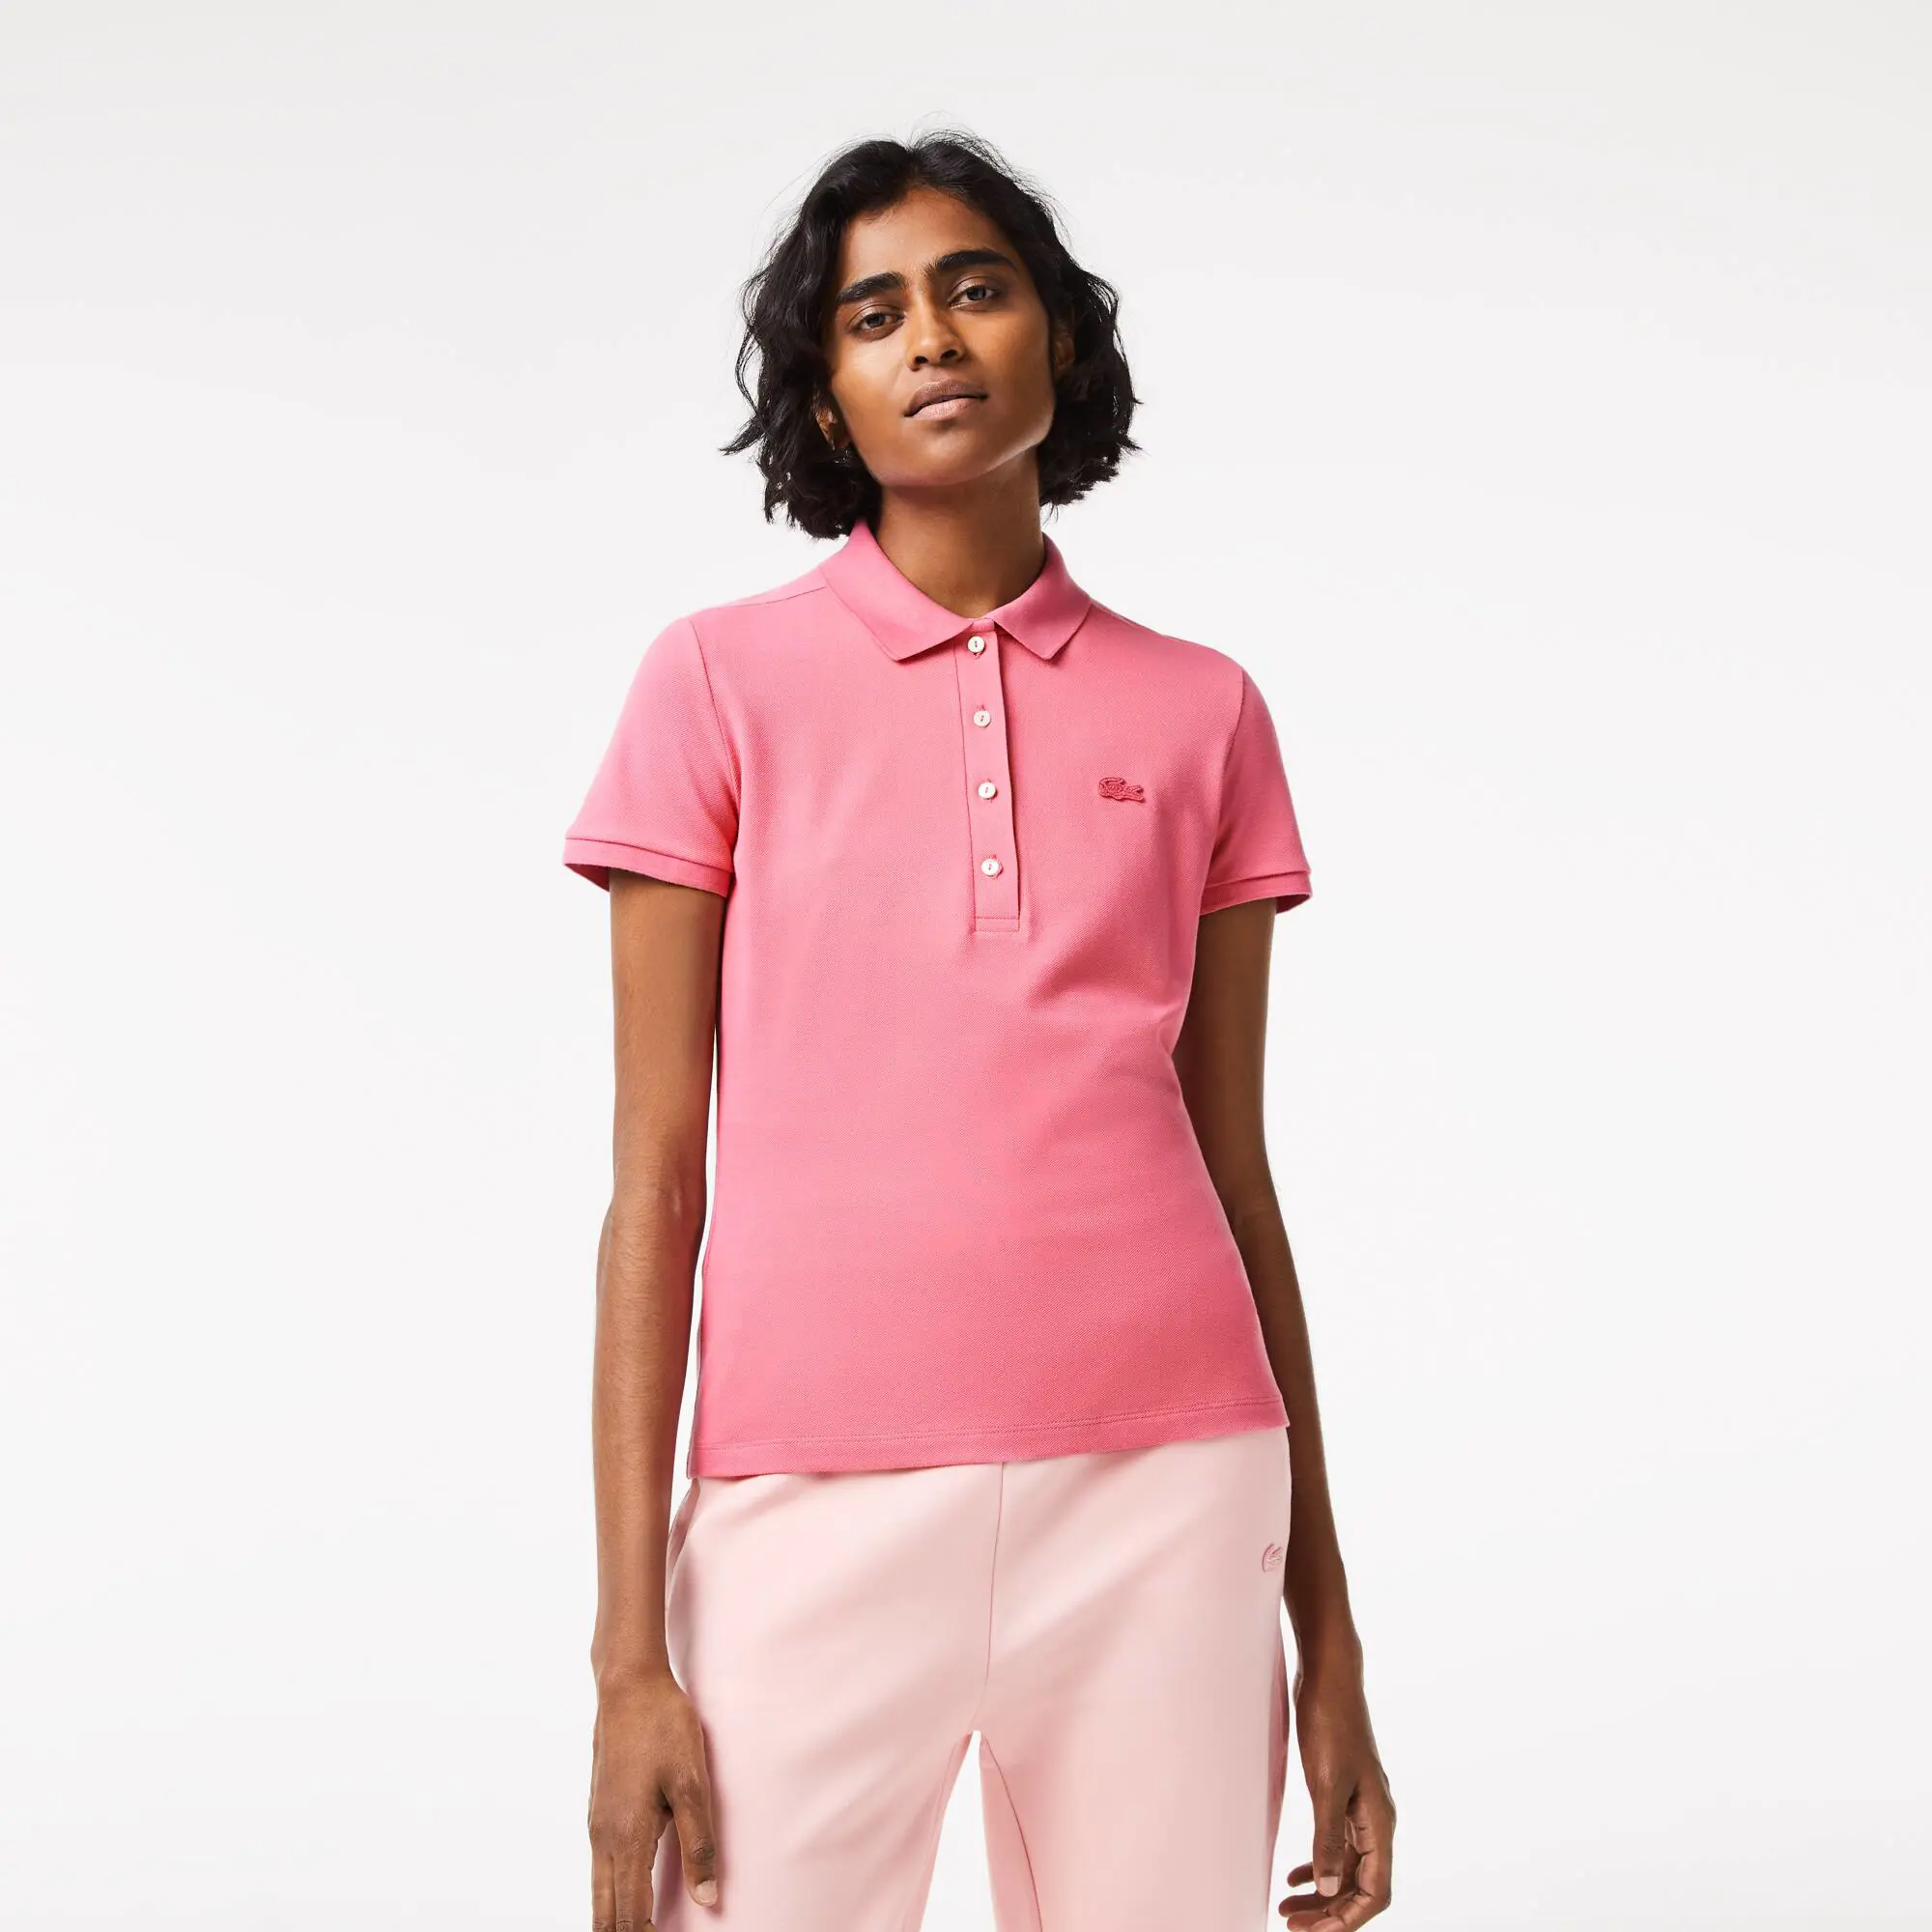 Lacoste Women's Lacoste Slim fit Stretch Cotton Piqué Polo Shirt. 1